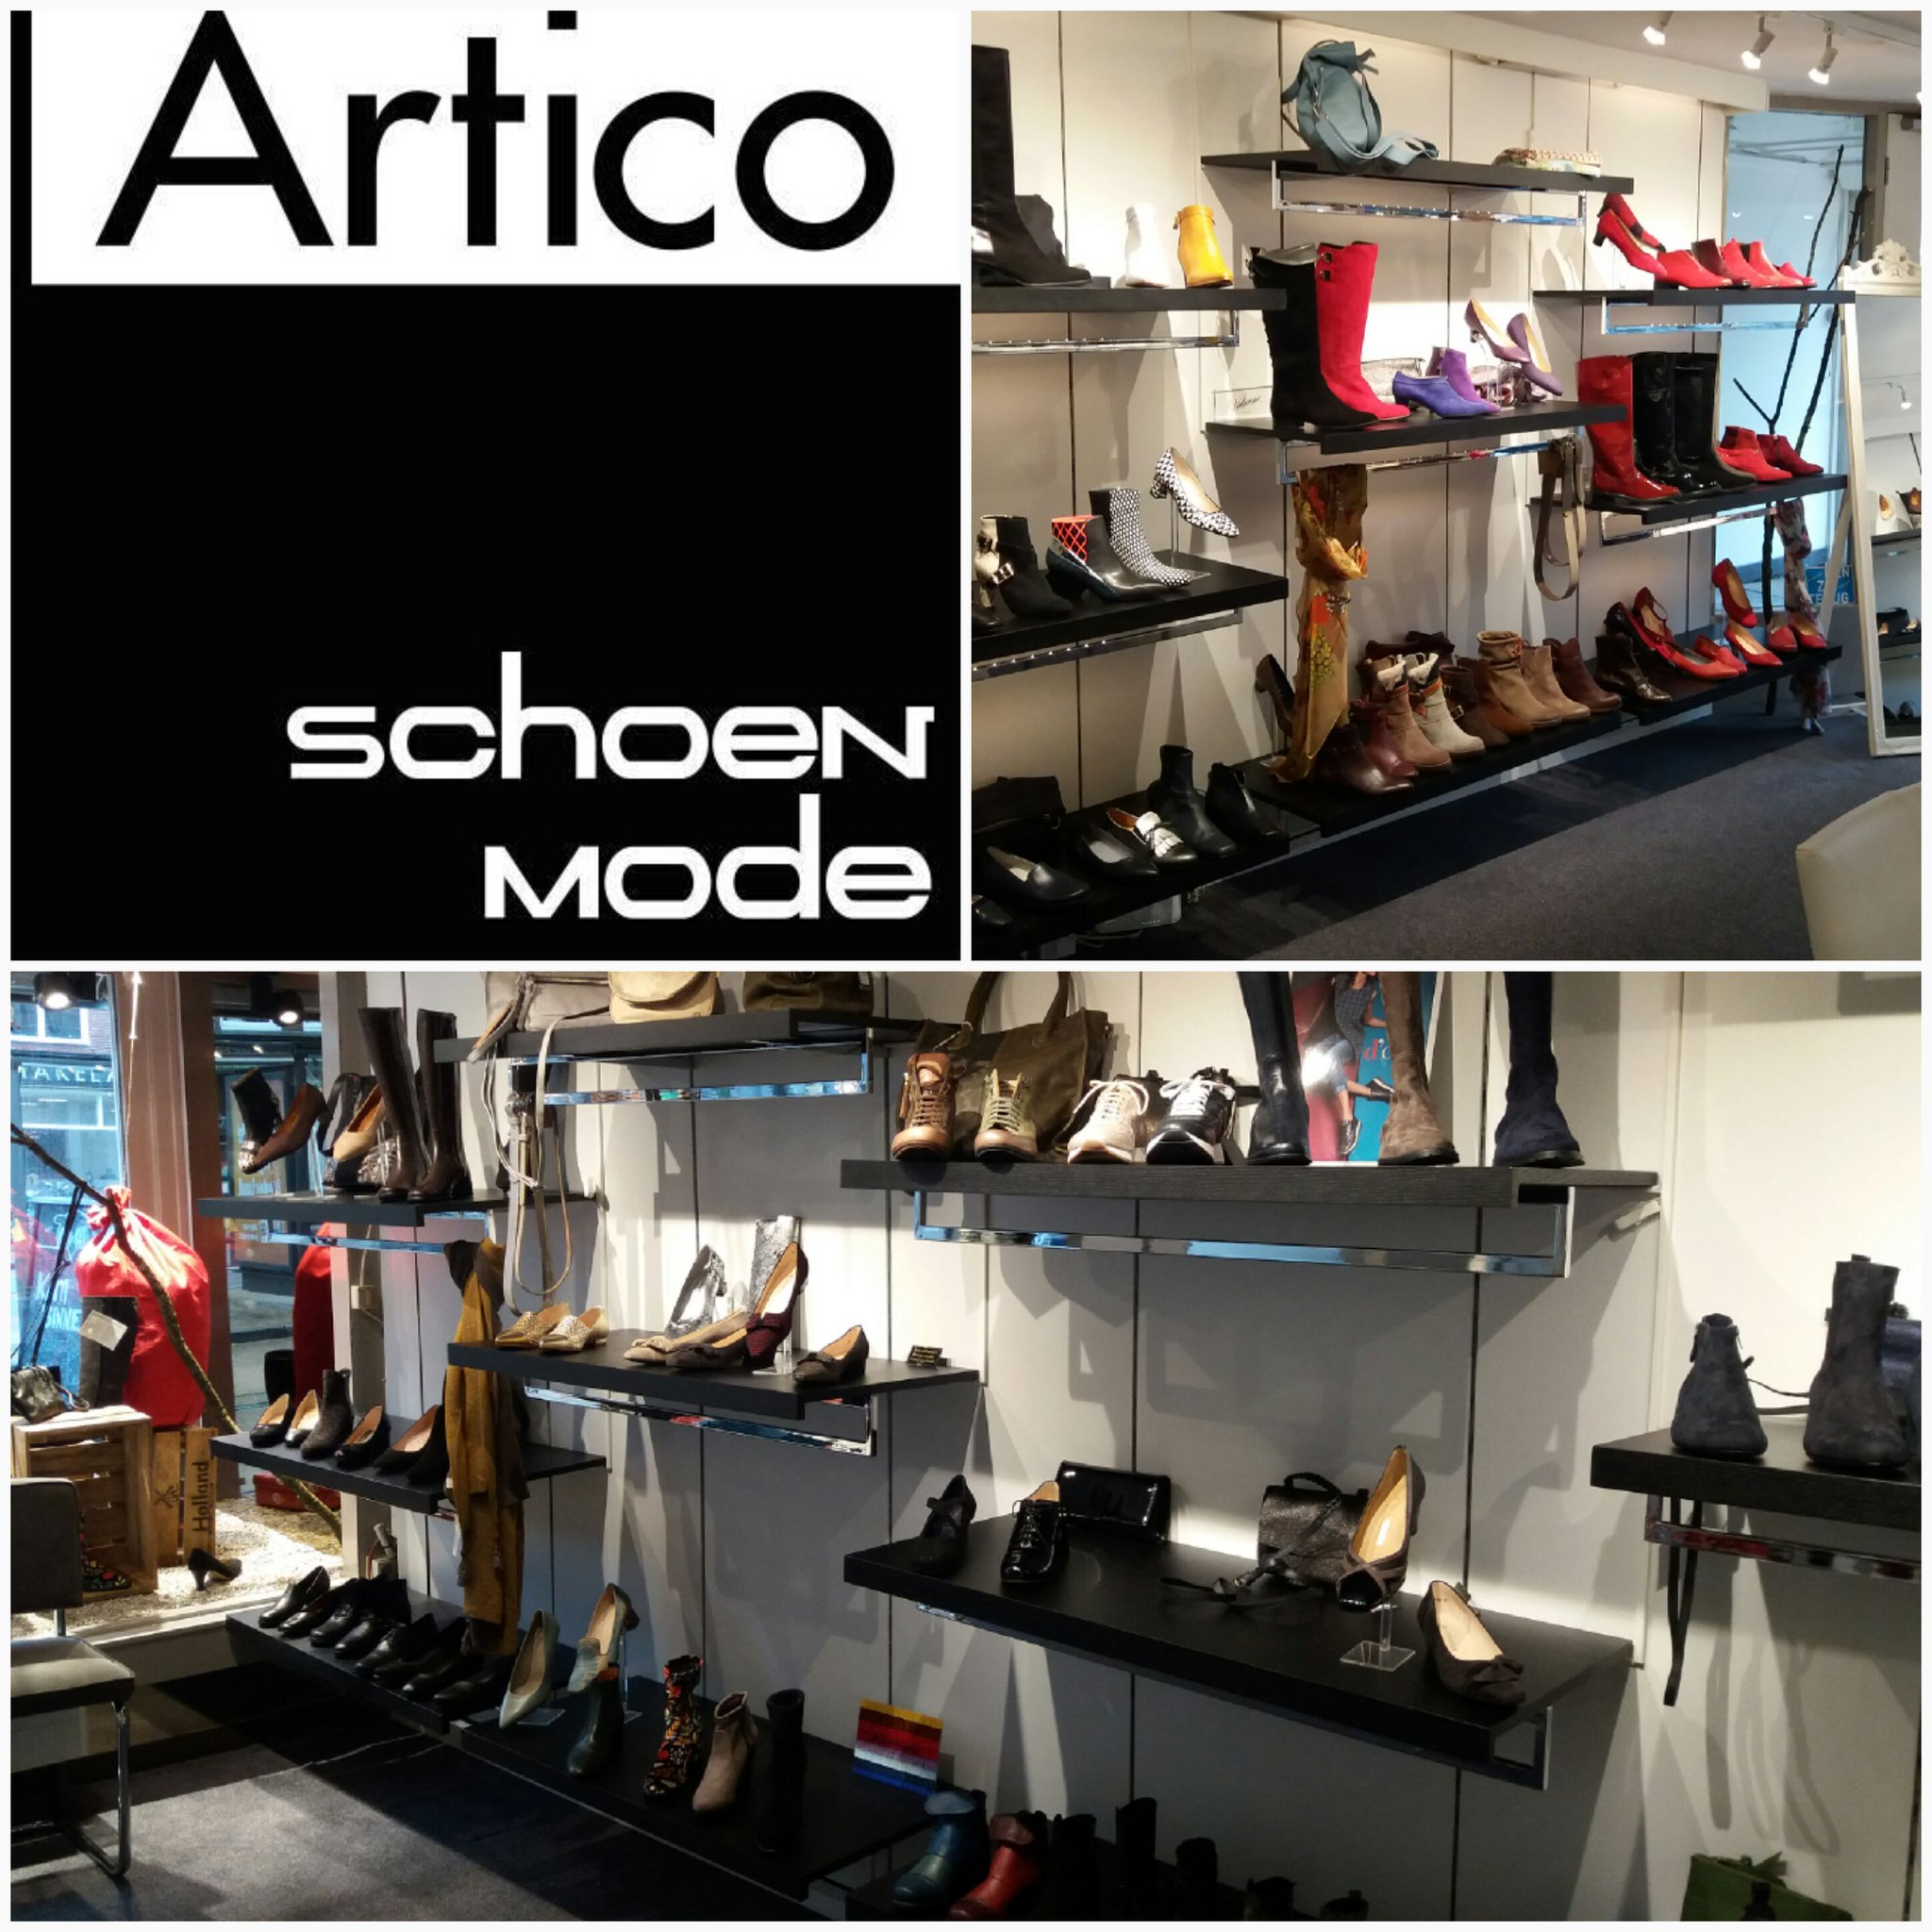 legaal belangrijk Uittreksel Carolieweg Groningen on Twitter: "#ARTICO #SCHOENEN #SCHOENENWINKEL  #GRONINGEN Gedempte Zuiderdiep 37 Groningen #shoes #shoepassion #shoeshop  #shoestore shoes for you #Women's Shoes https://t.co/cniRpUdf1Q  https://t.co/BA1FwdP2t7" / Twitter